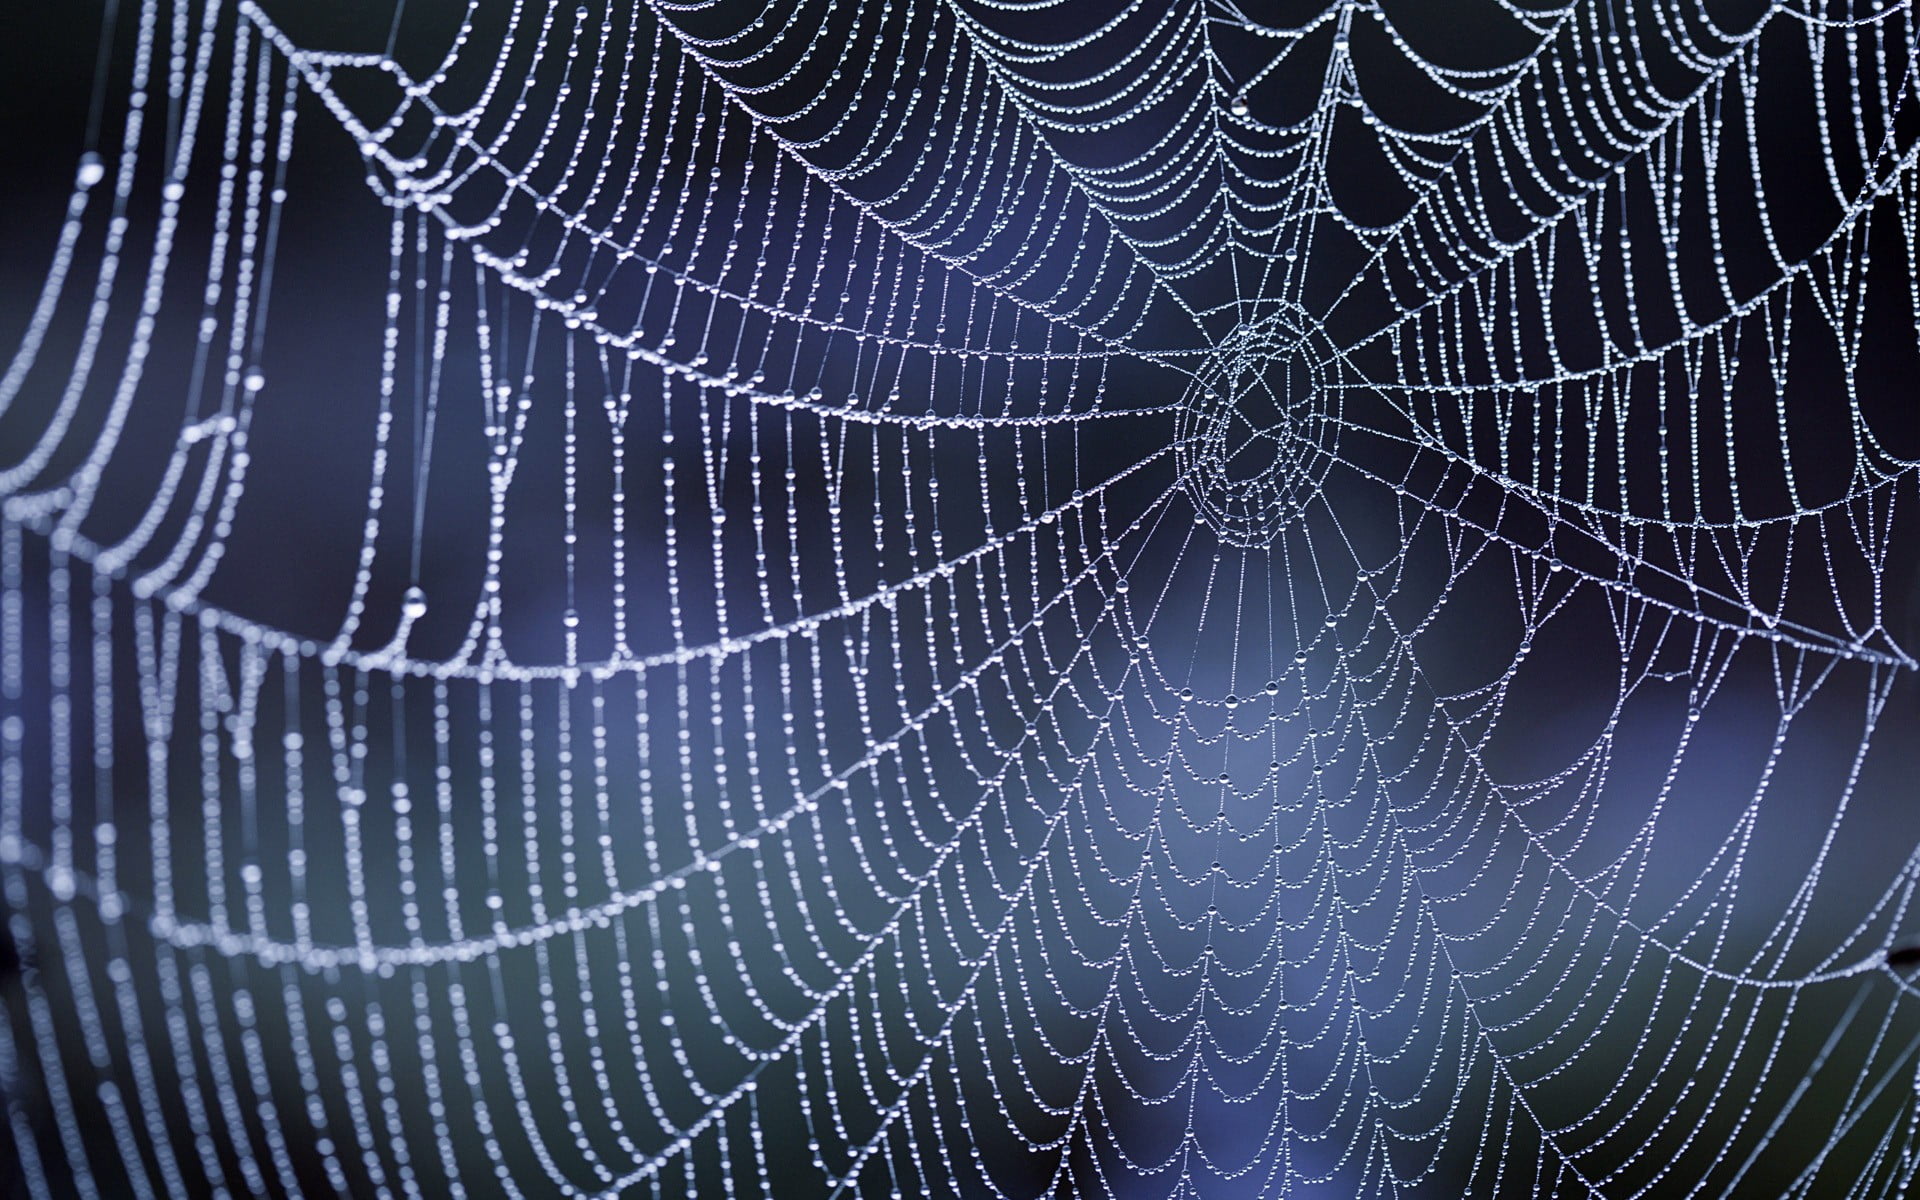 Spider in a web wallpaper - lokiweek